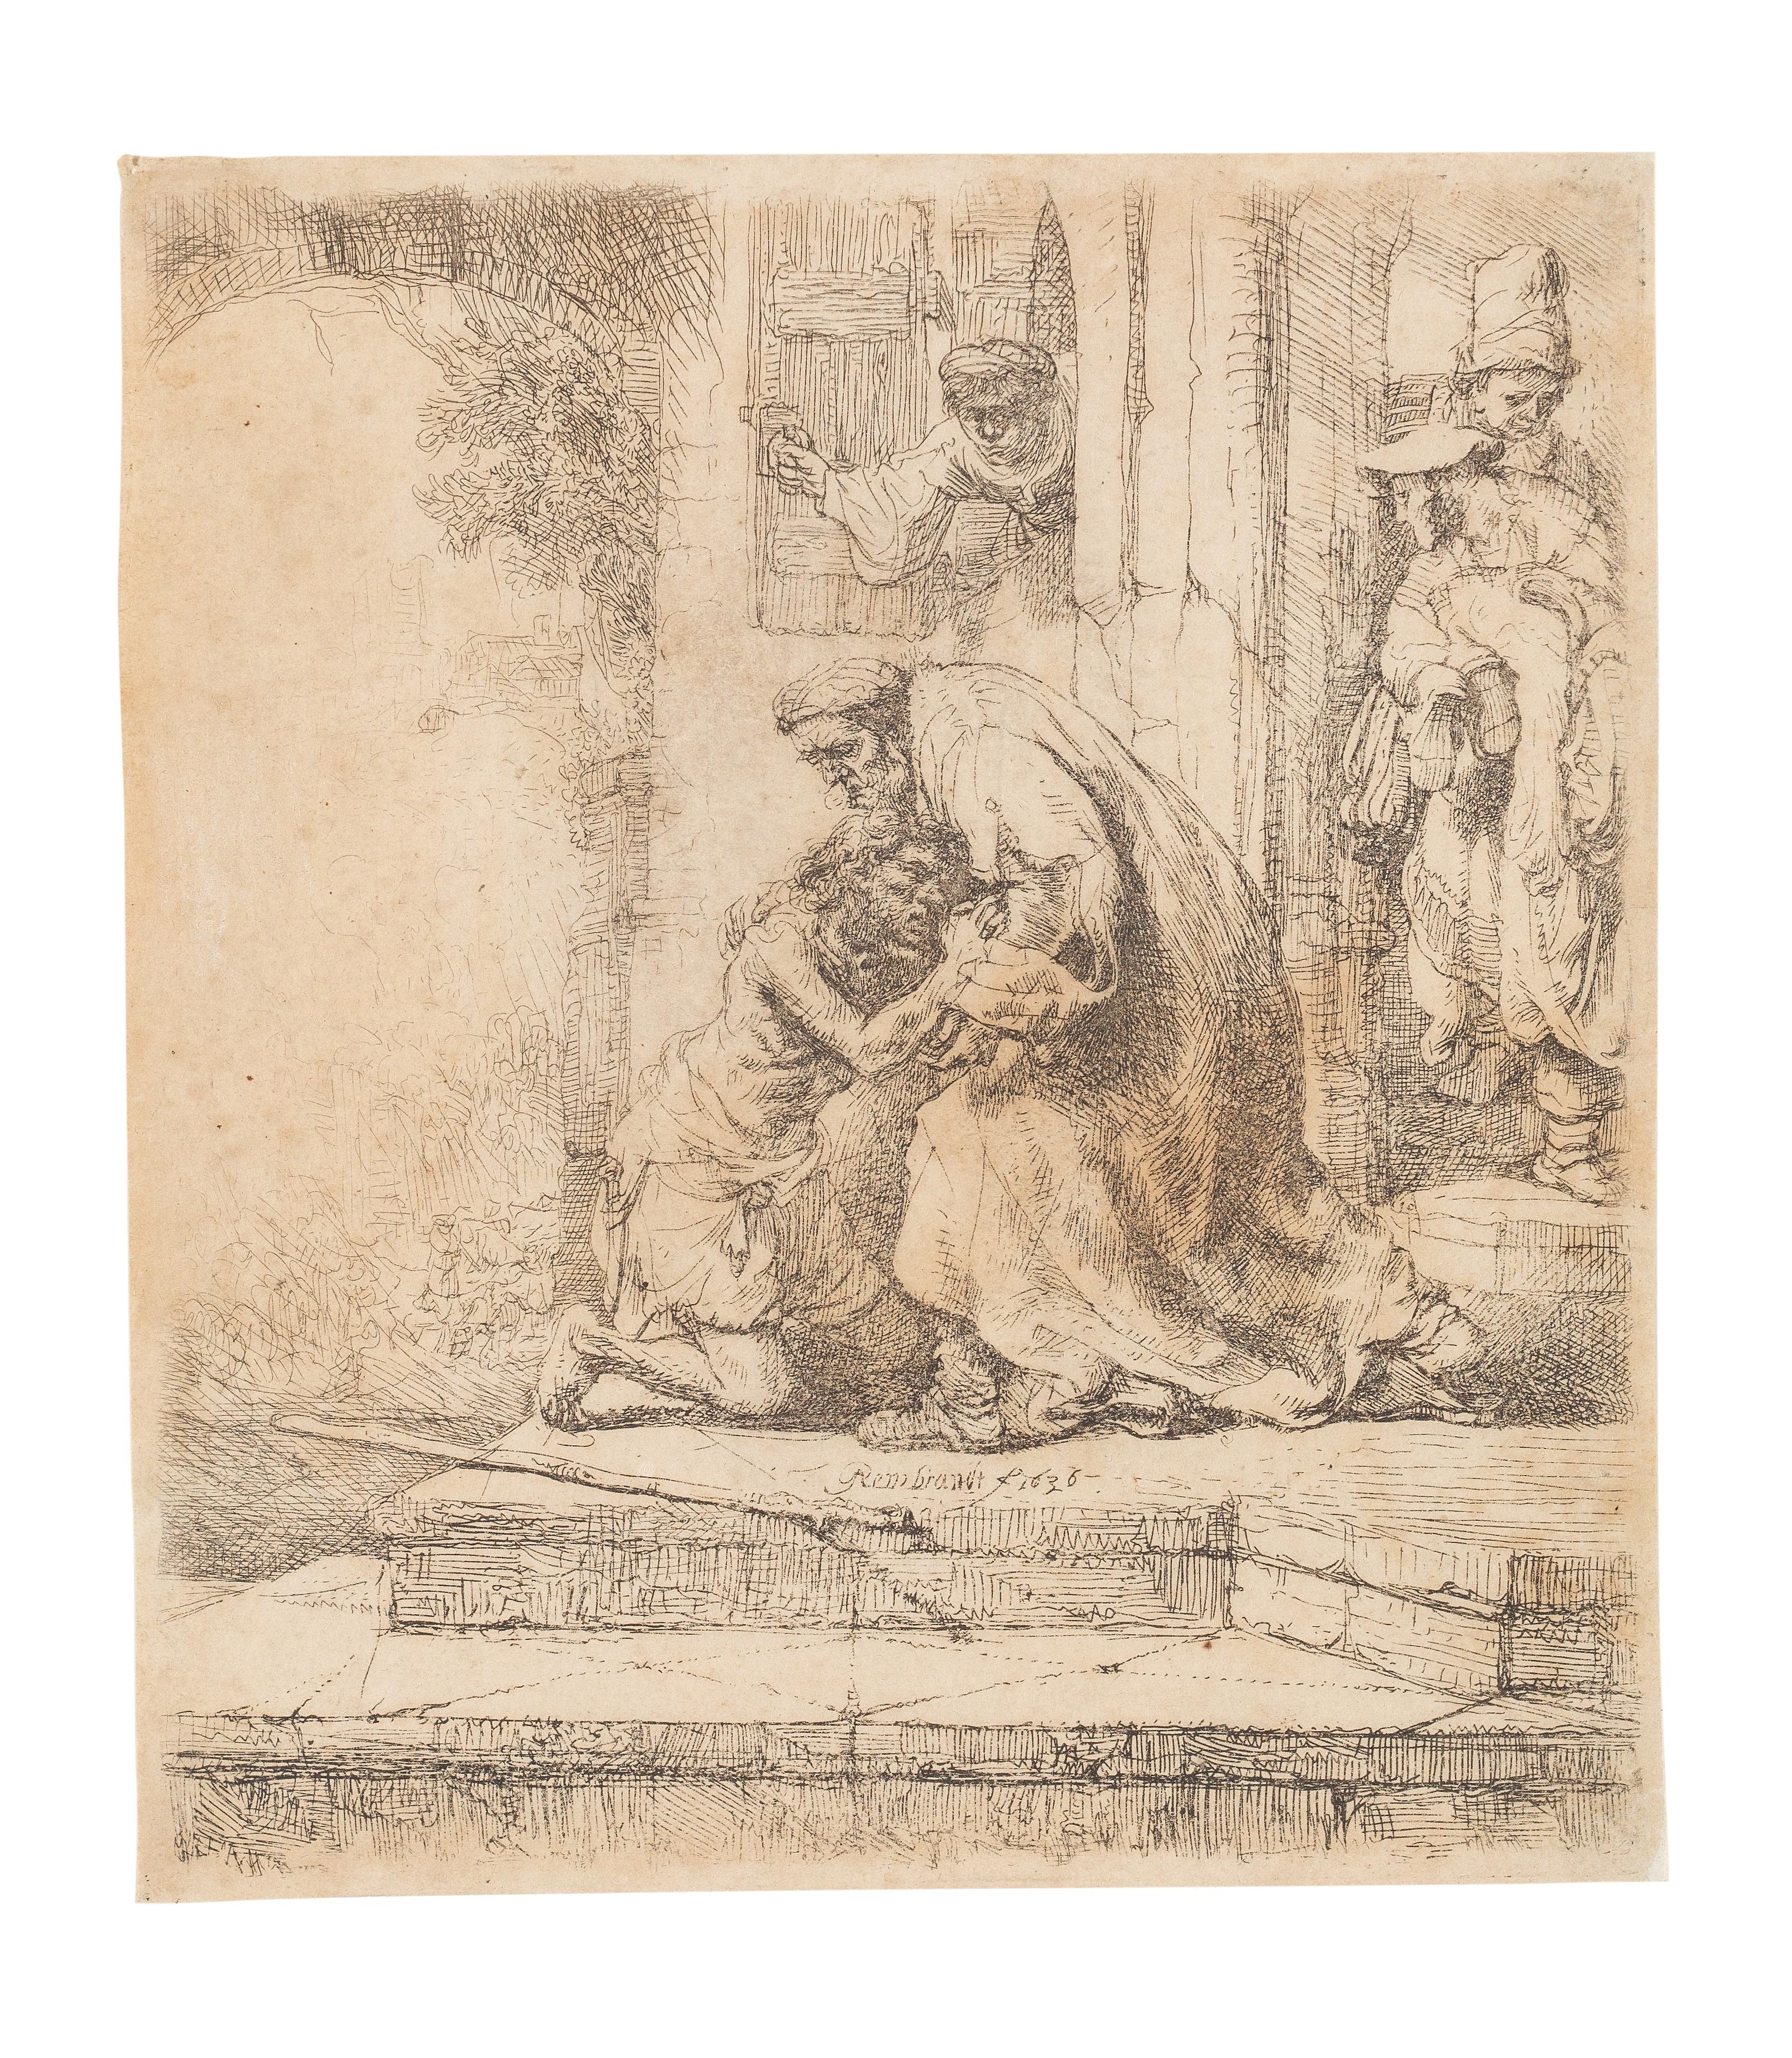 Artwork by Rembrandt van Rijn, Die Rückkehr des verlorenen Sohnes, Made of Etching on laid paper